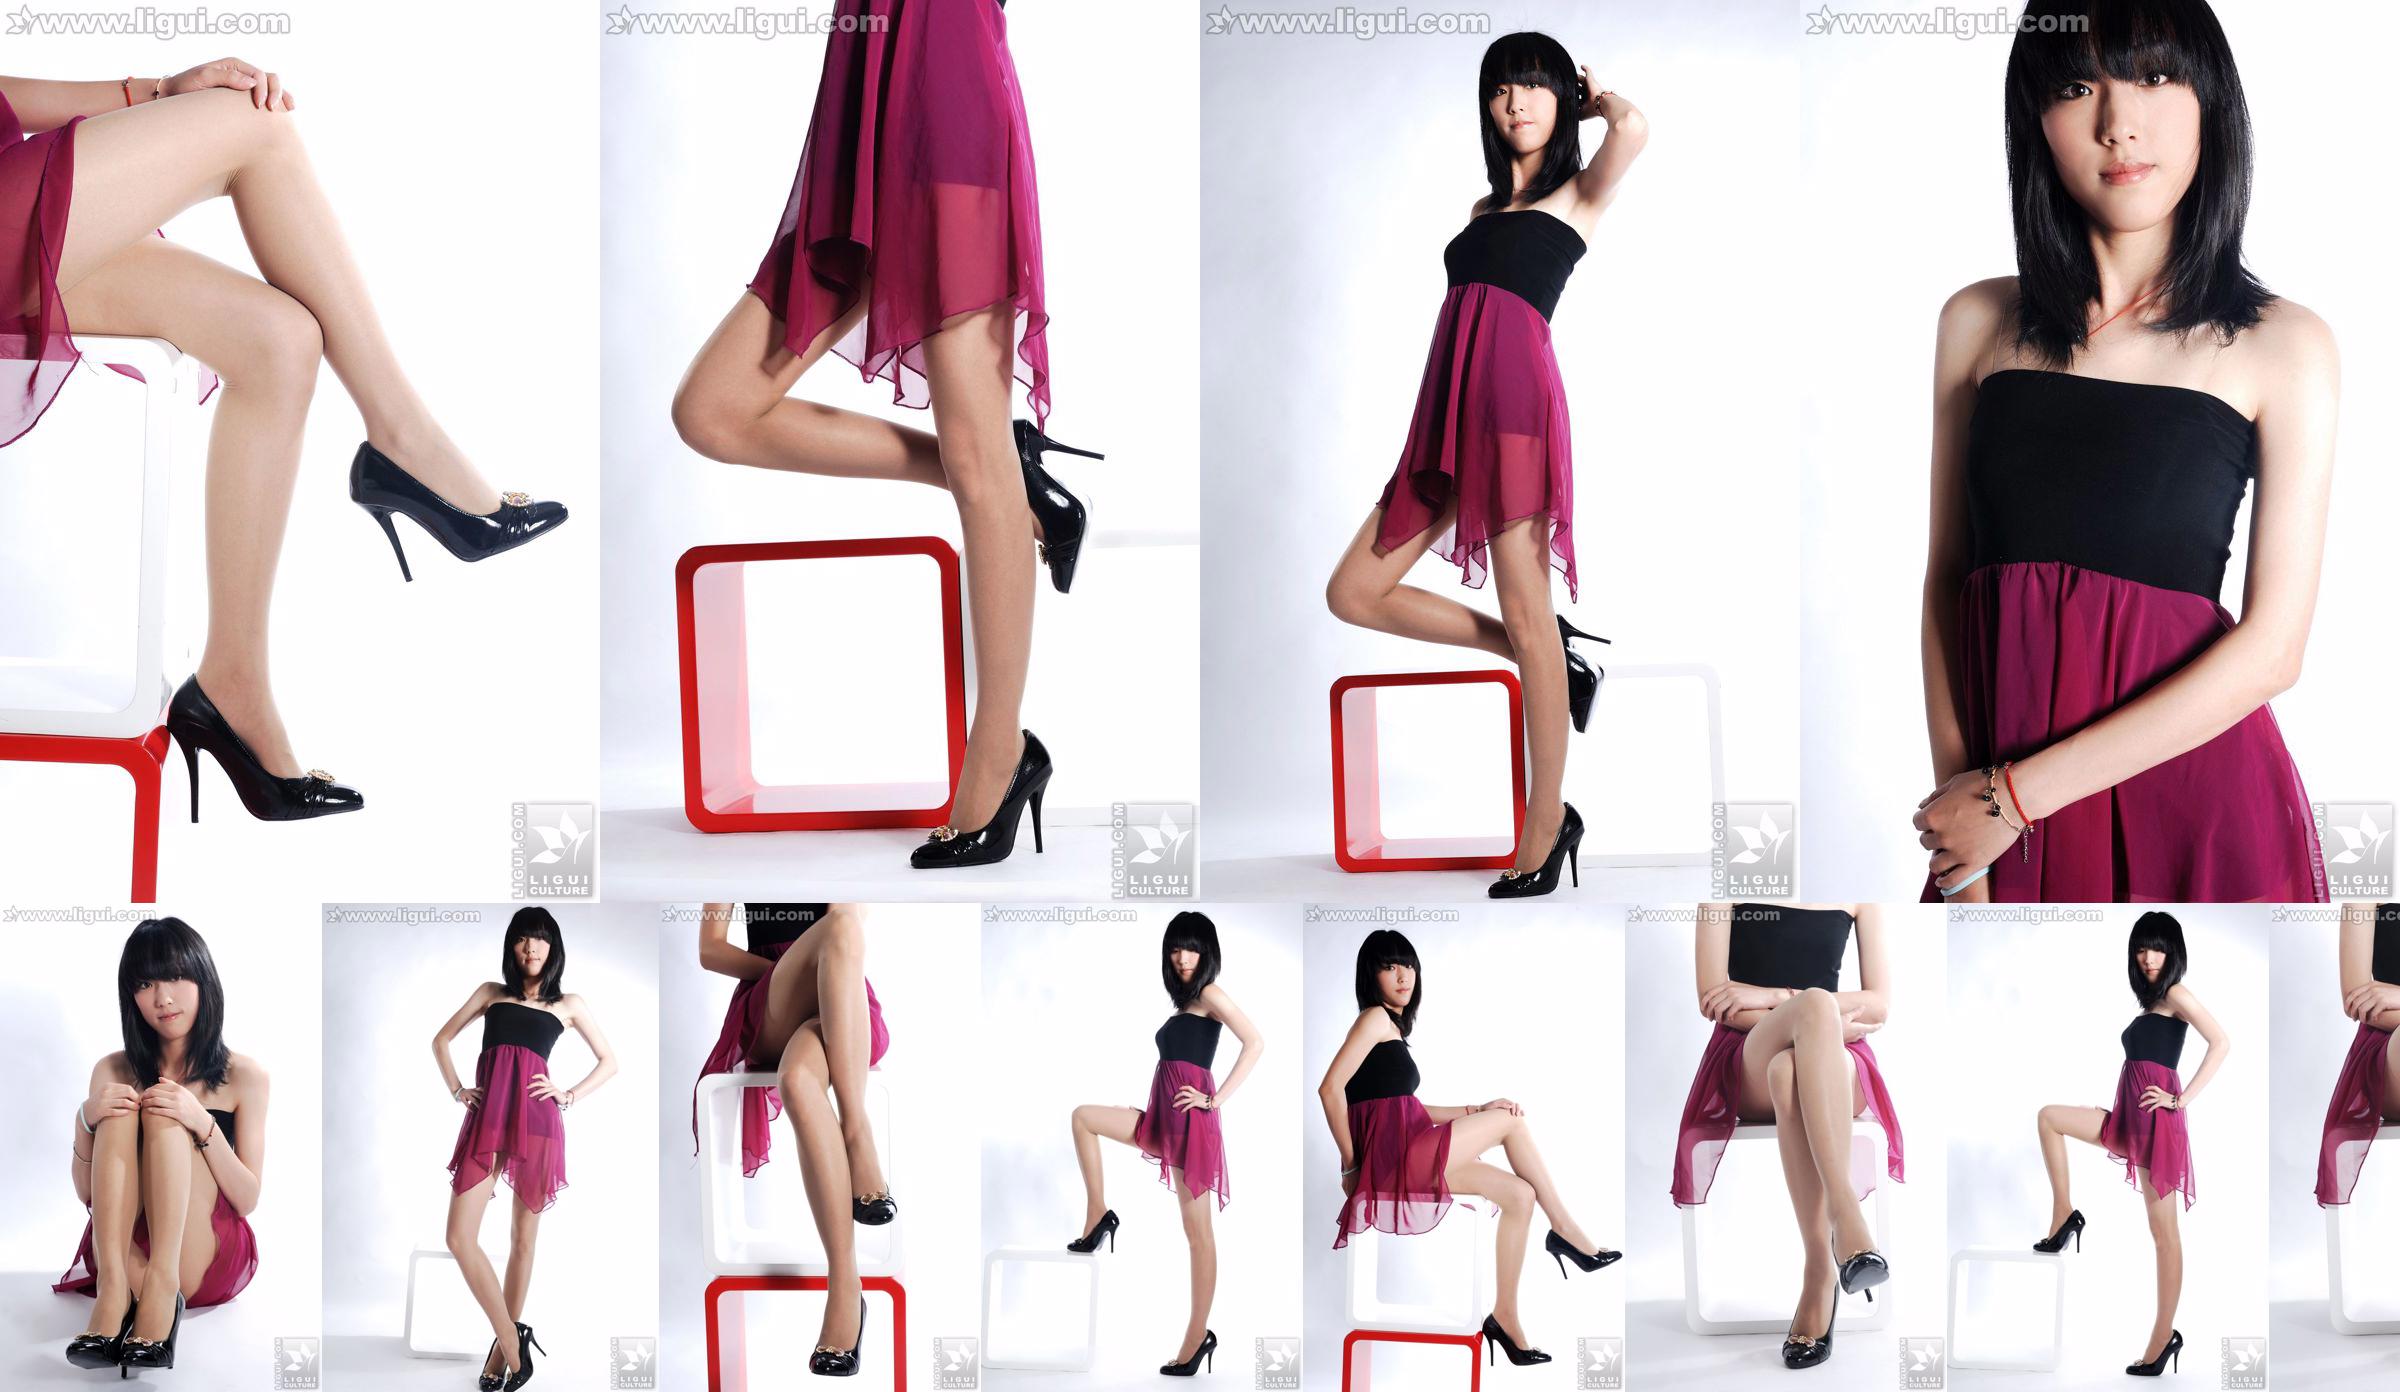 นางแบบ Lu Yingmei "Top Visual High-heeled Blockbuster" [丽柜 LiGui] ภาพถ่ายขาสวยและเท้าหยก No.a30342 หน้า 7